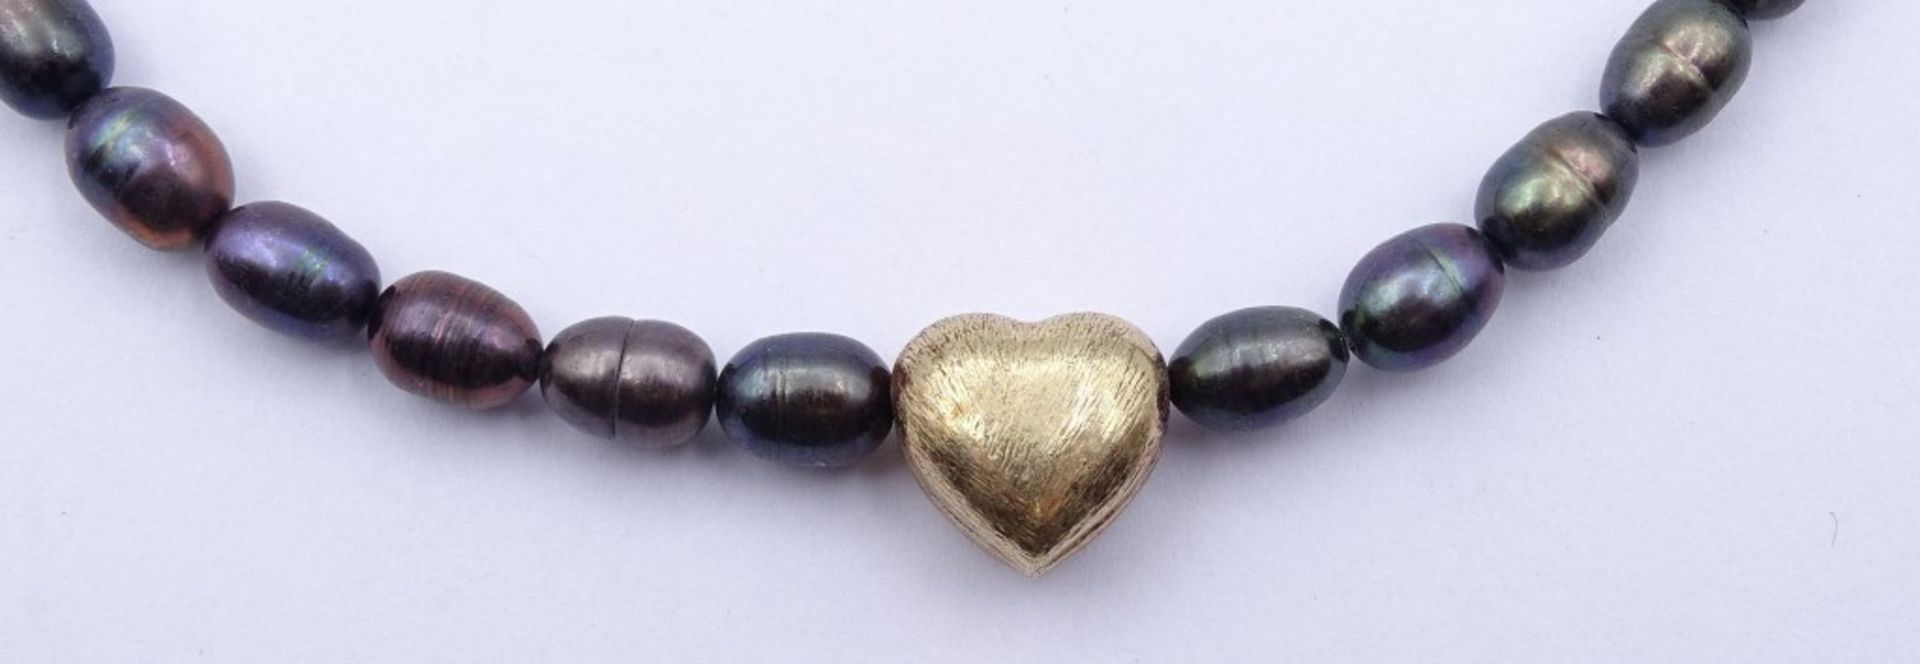 Perlen Halskette mit Herz Anhänger,Silber-vergoldet,Karabinerverschluss,ca.L- 43cm, 20gr. - Image 2 of 5